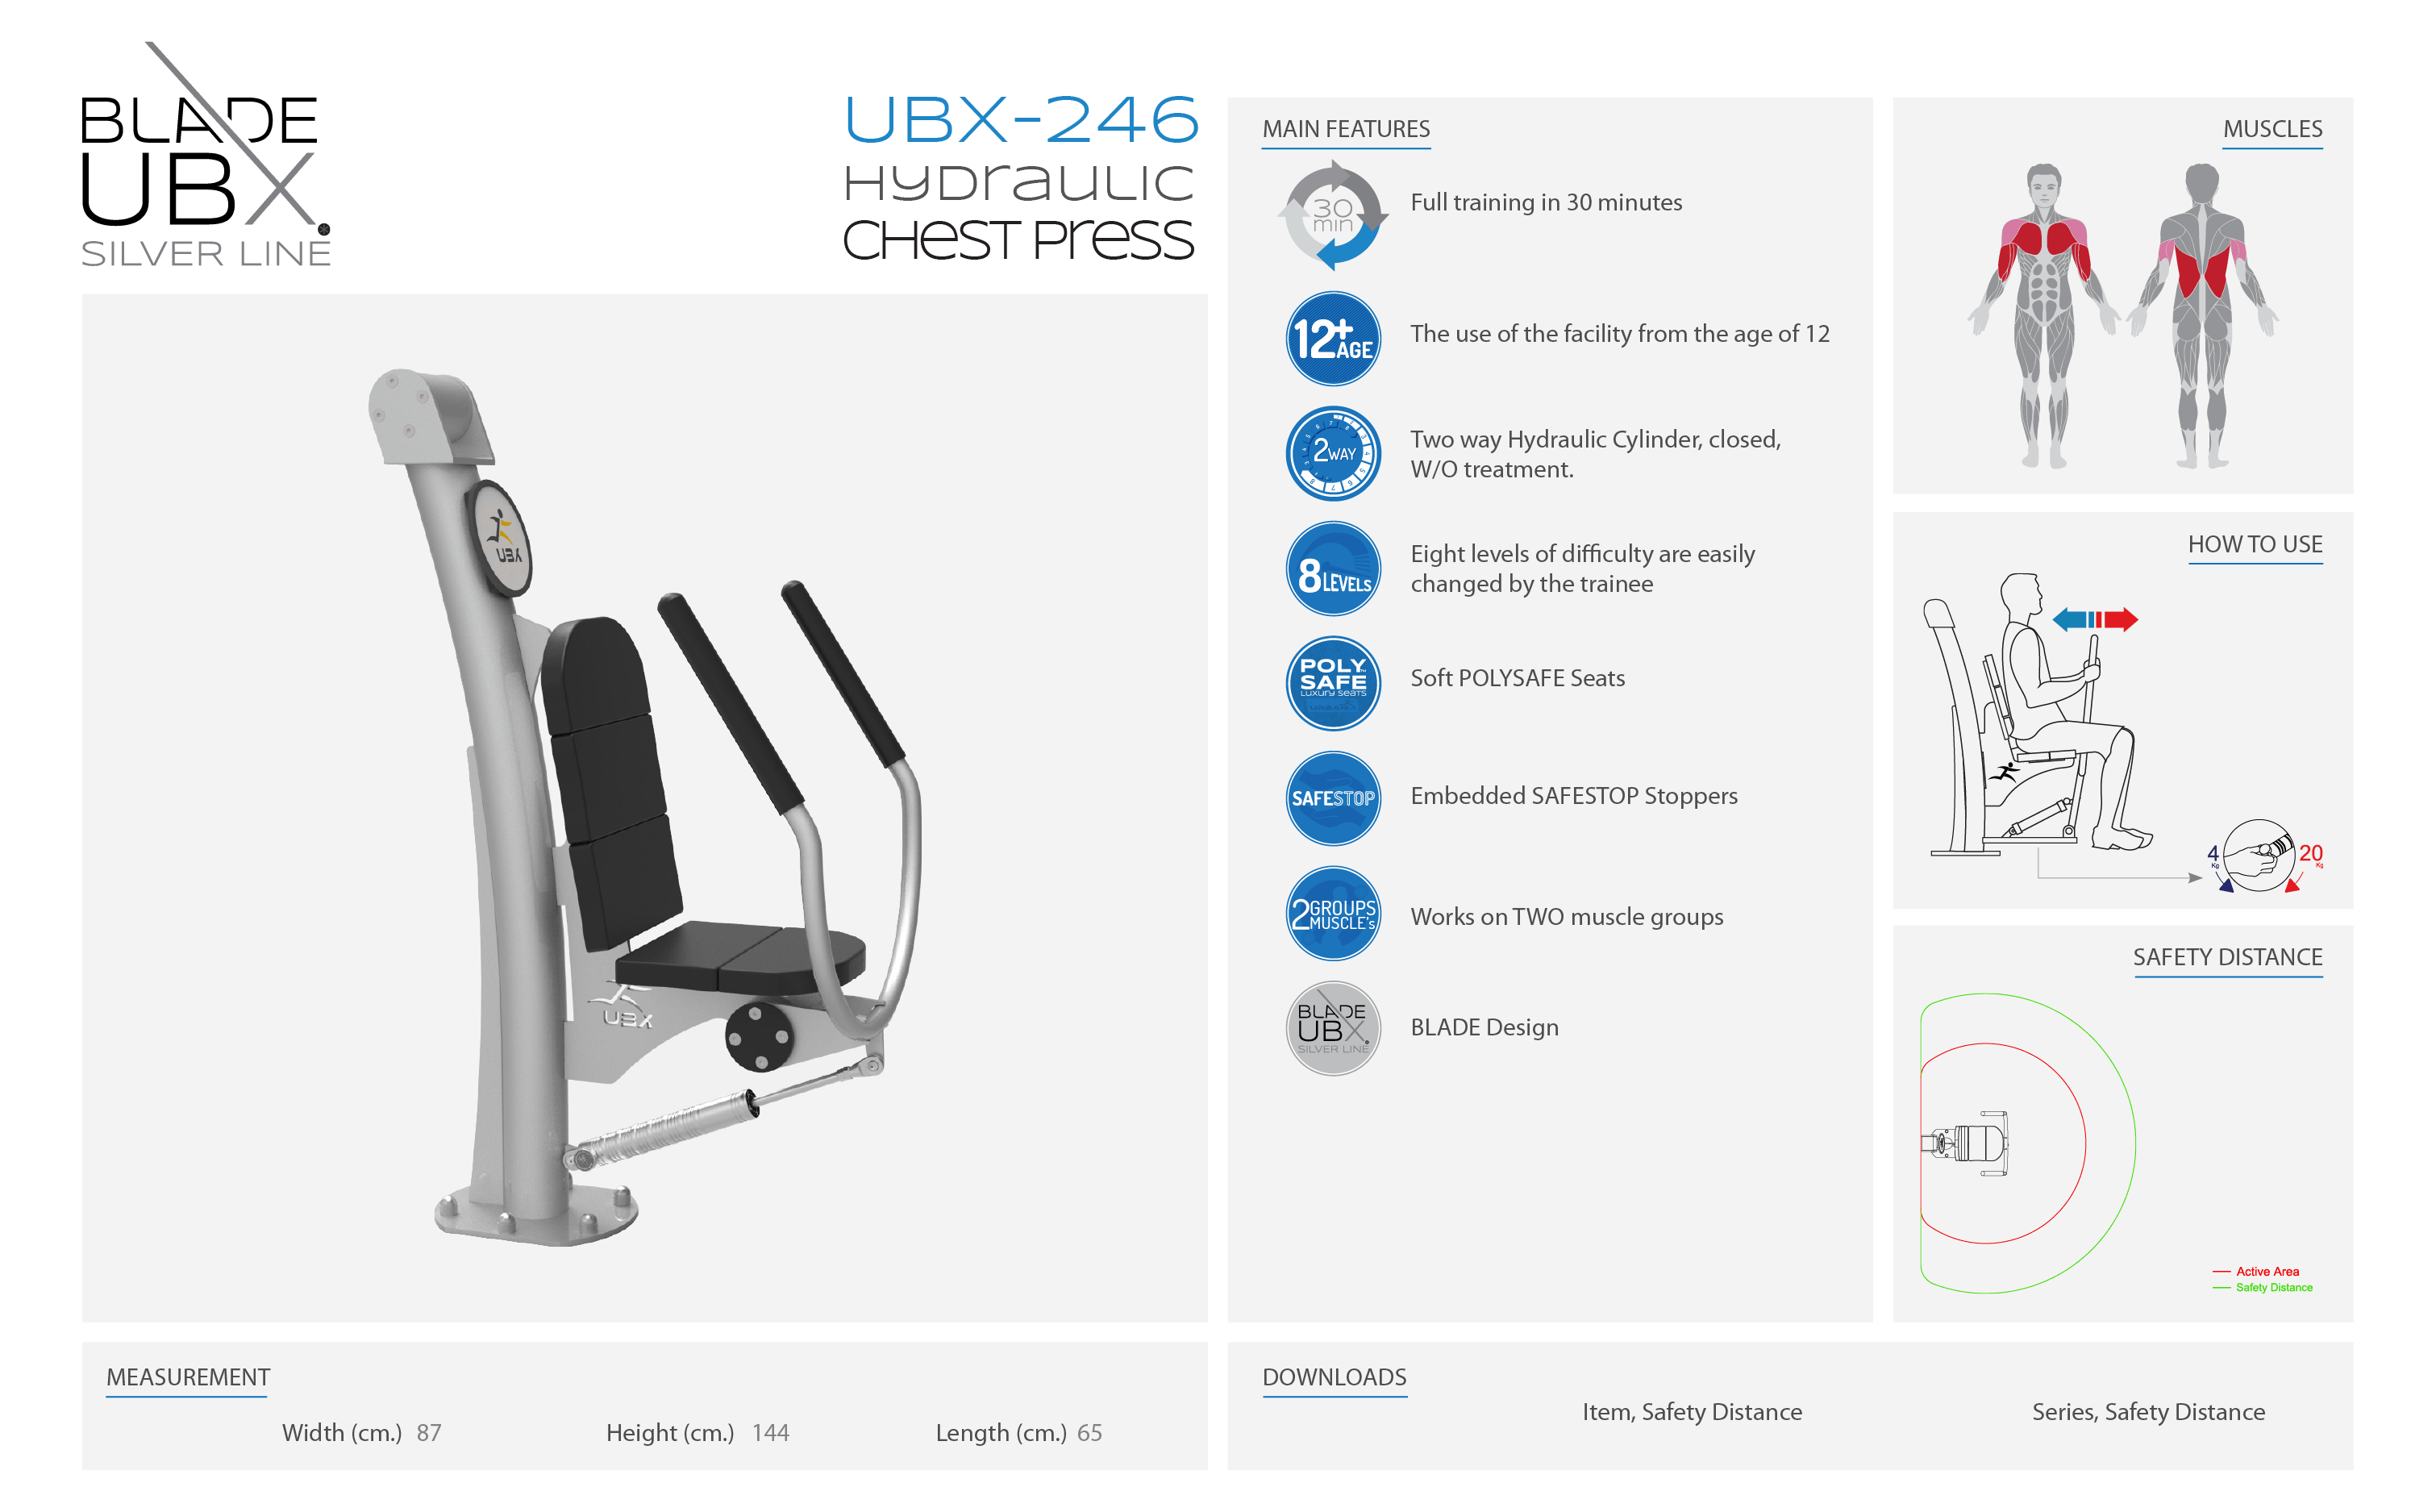 ubx-246 hydraulic chest press - אורבניקס - מתקן כושר - מאמן חתירה הידראולי